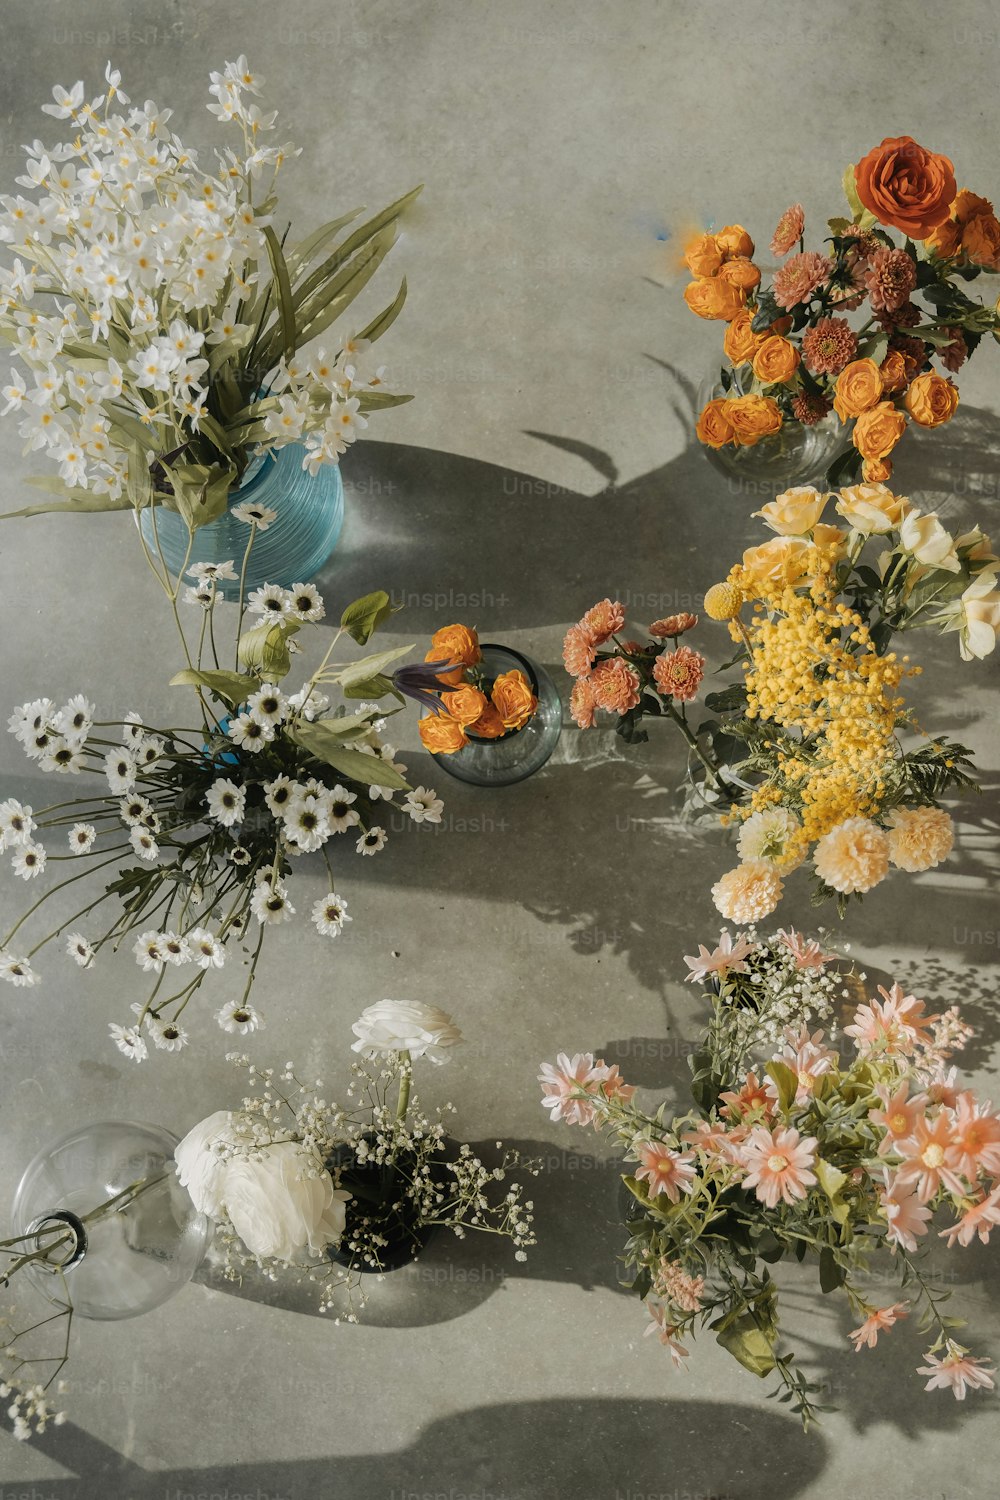 Un grupo de flores sentadas encima de una mesa